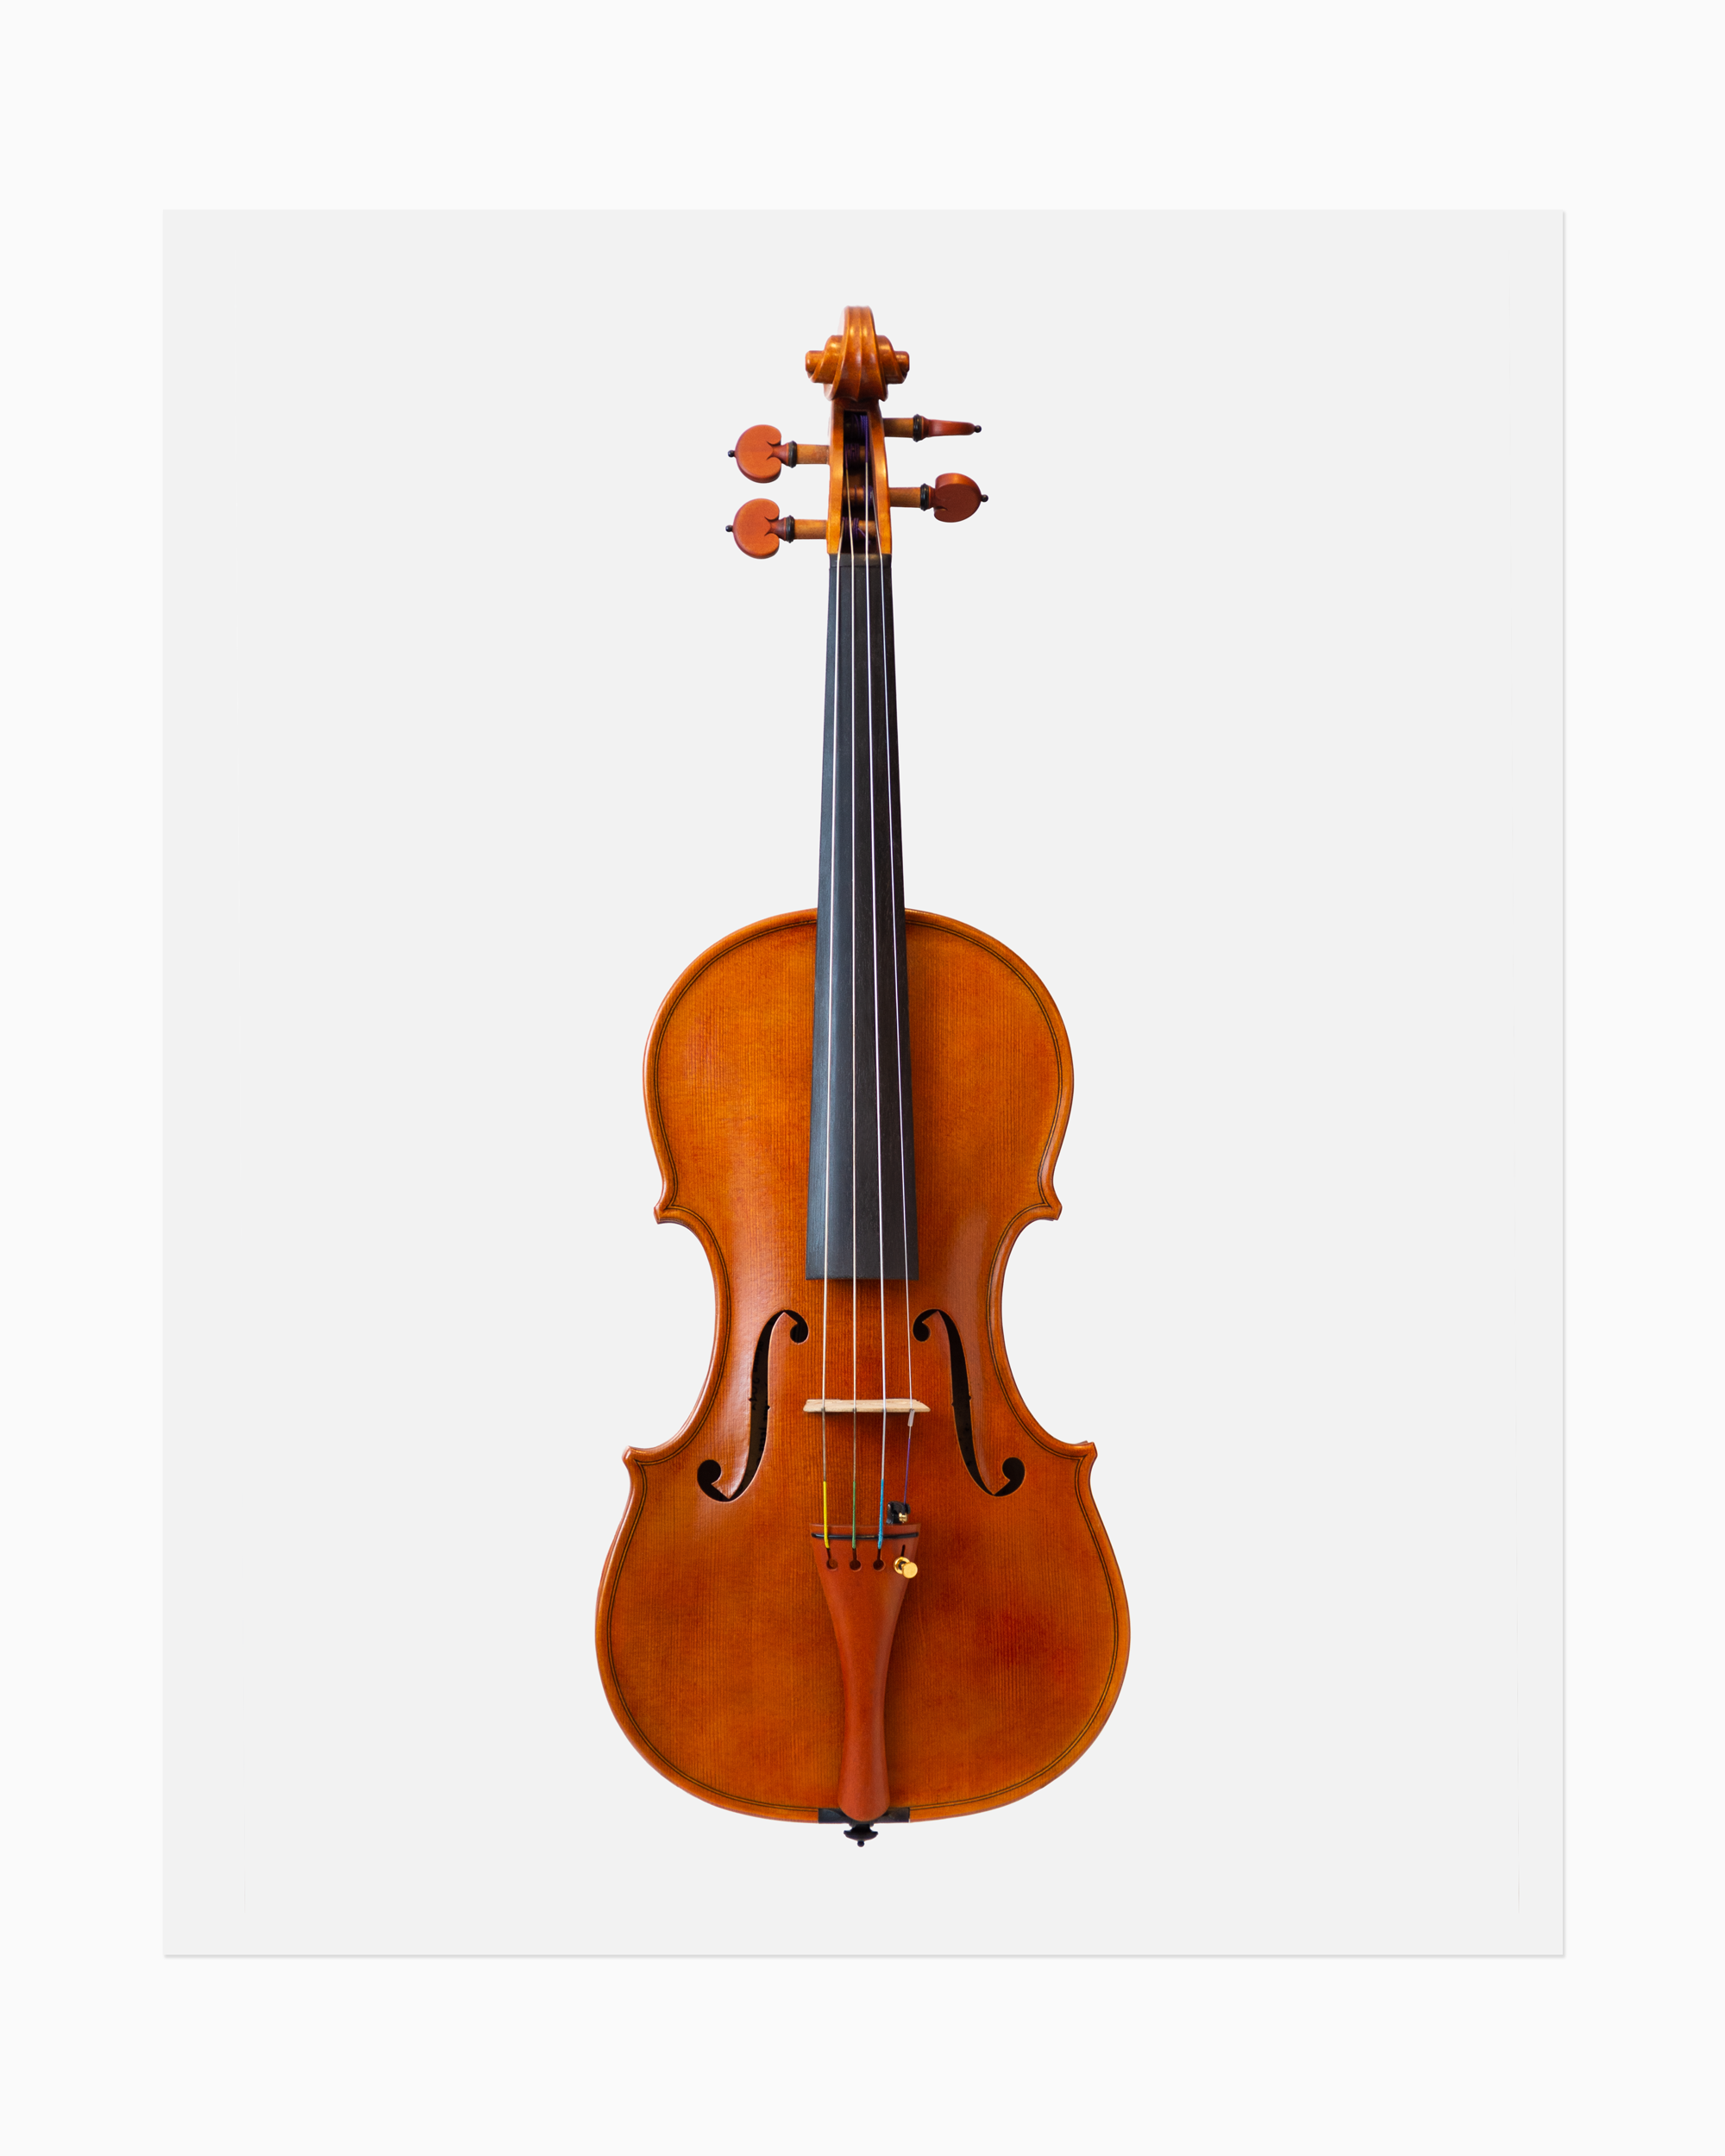 Violin front full body in color